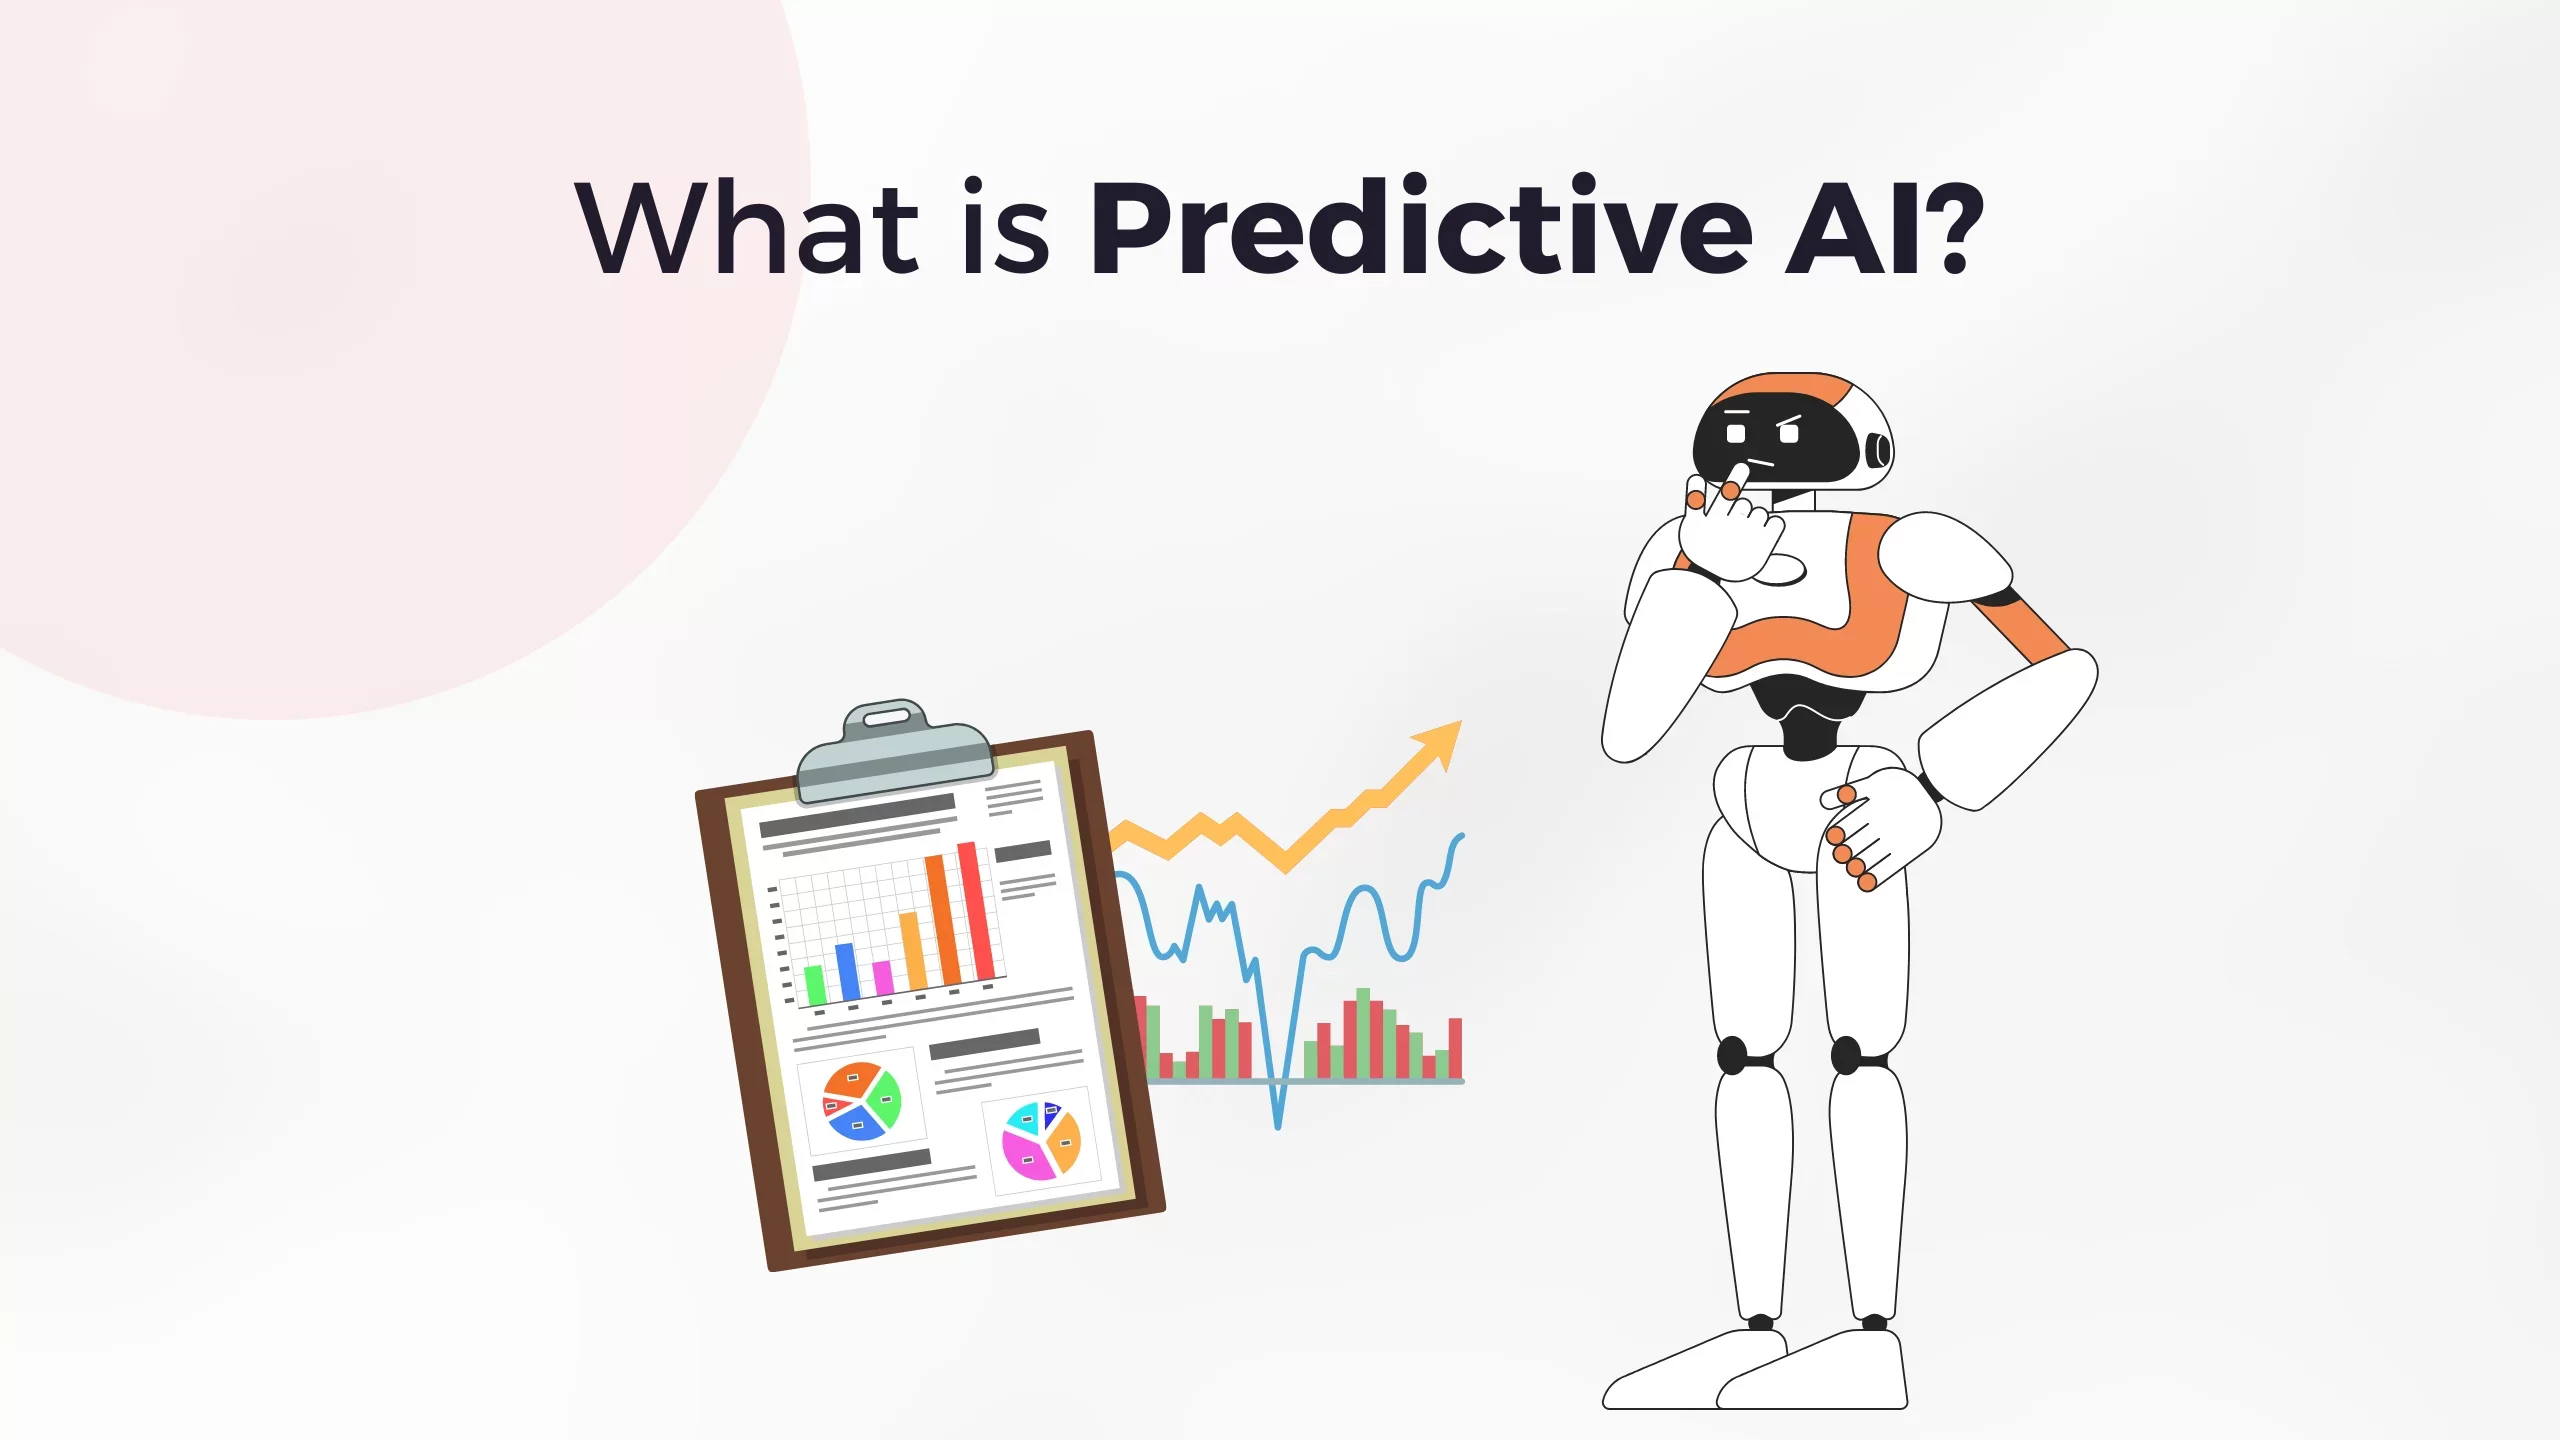 Predictive AI